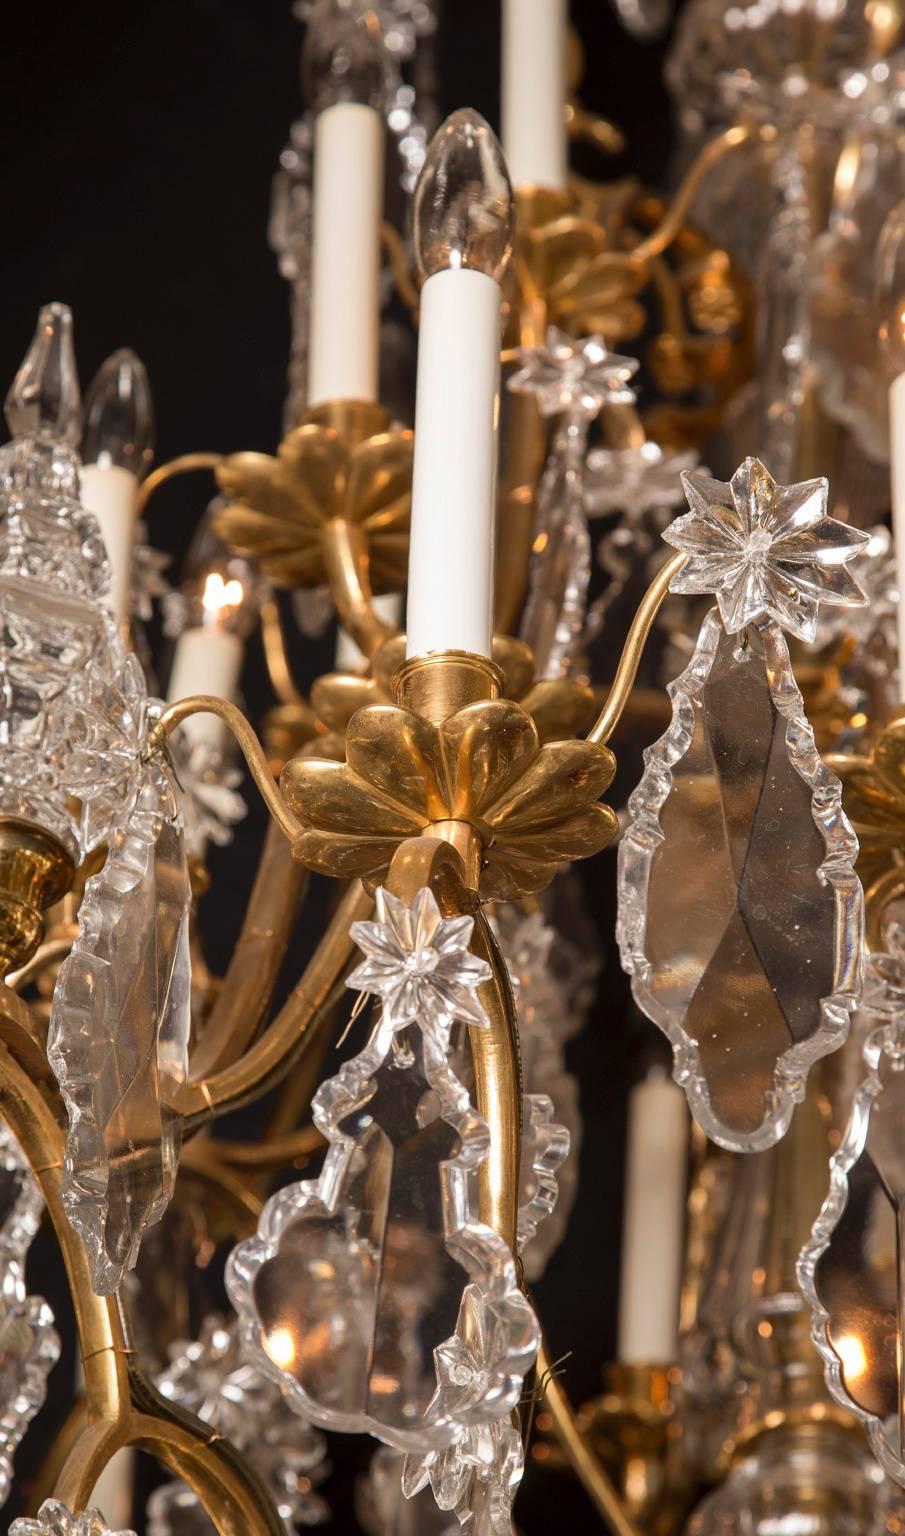 Ce lustre français Louis XV à plusieurs niveaux est fait d'un magnifique bronze d'or et date du 19e siècle. La pièce comporte 45 lumières et est ornée d'une pléthore de cristaux ; on peut voir de grandes plaquettes de différentes formes, souvent